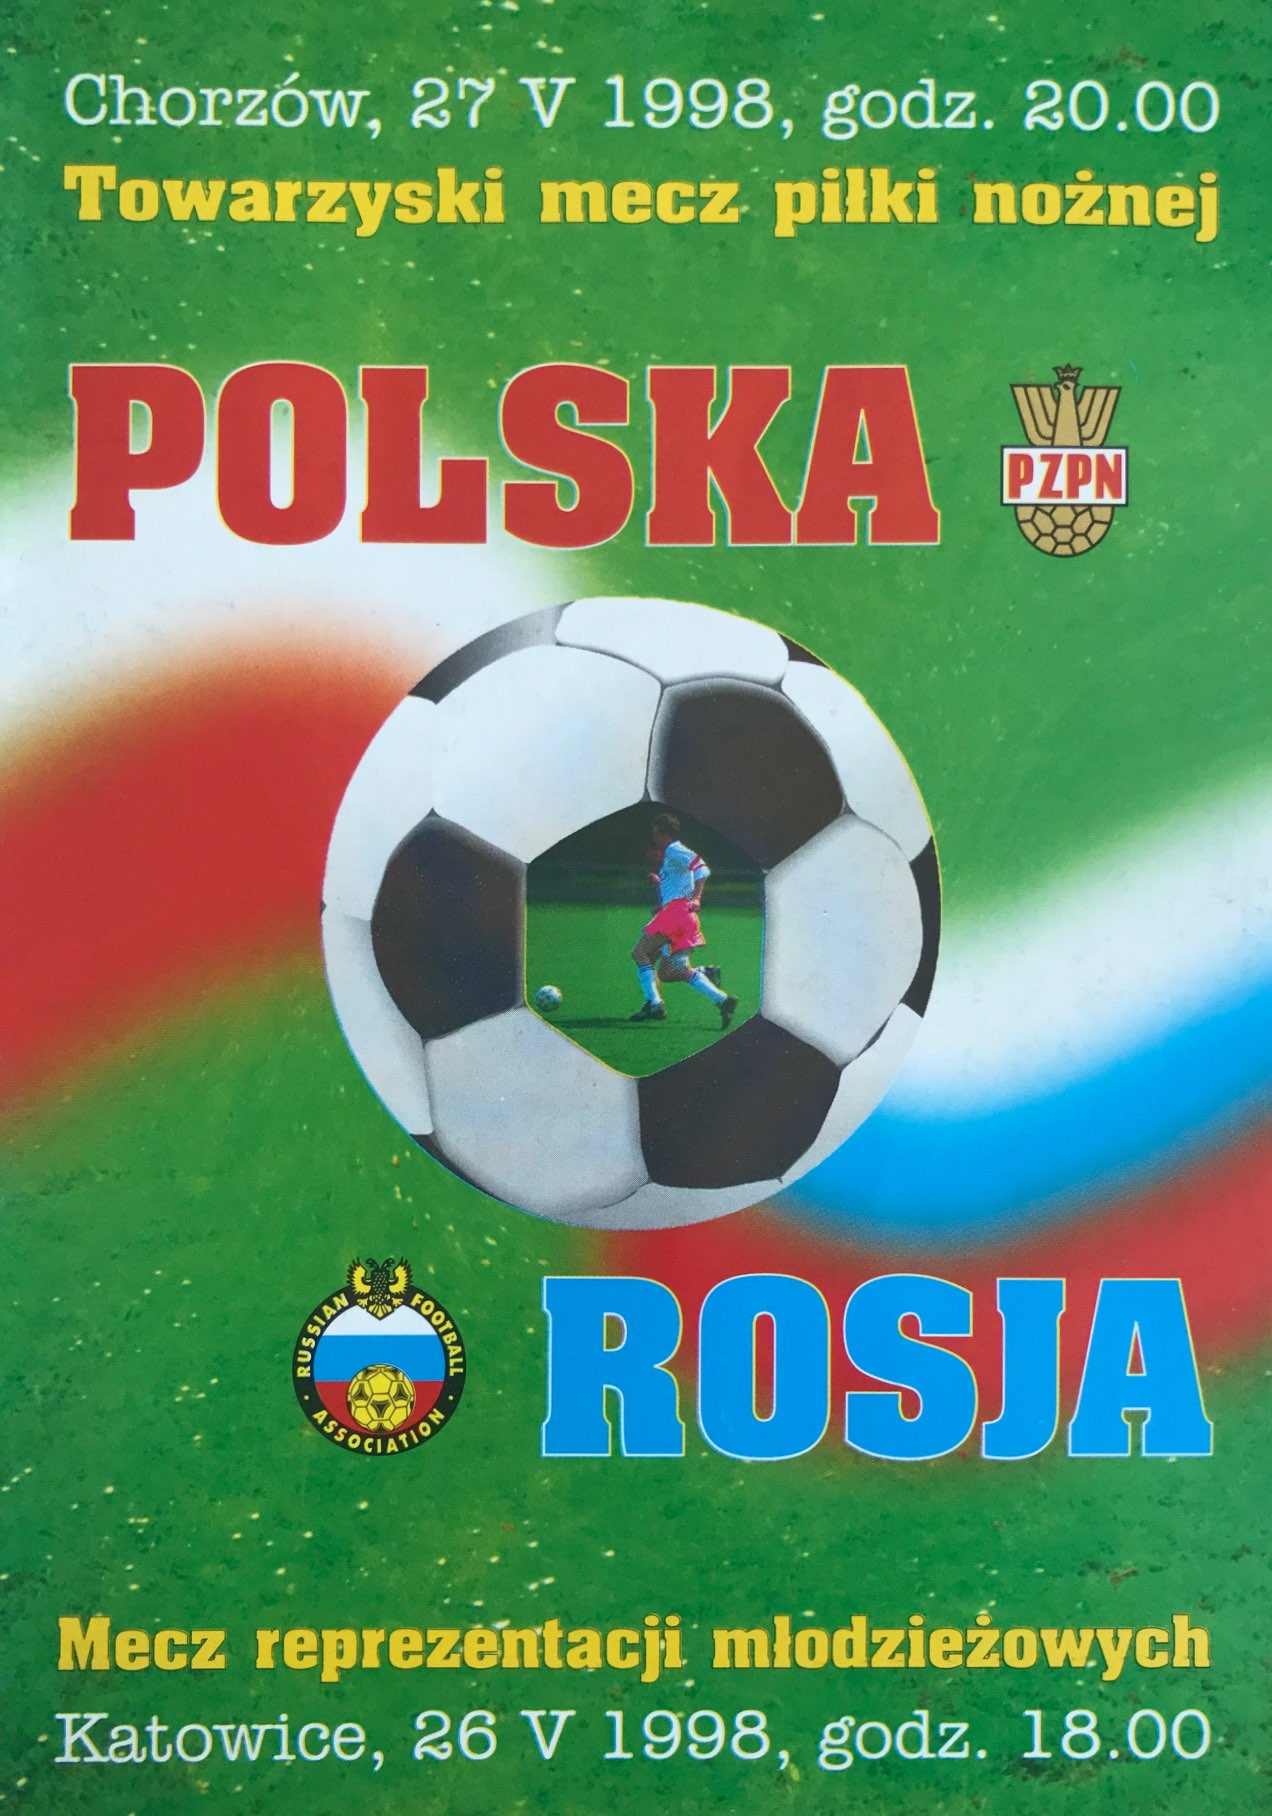 Program meczowy Polska - Rosja 3:1 (27.05.1998)